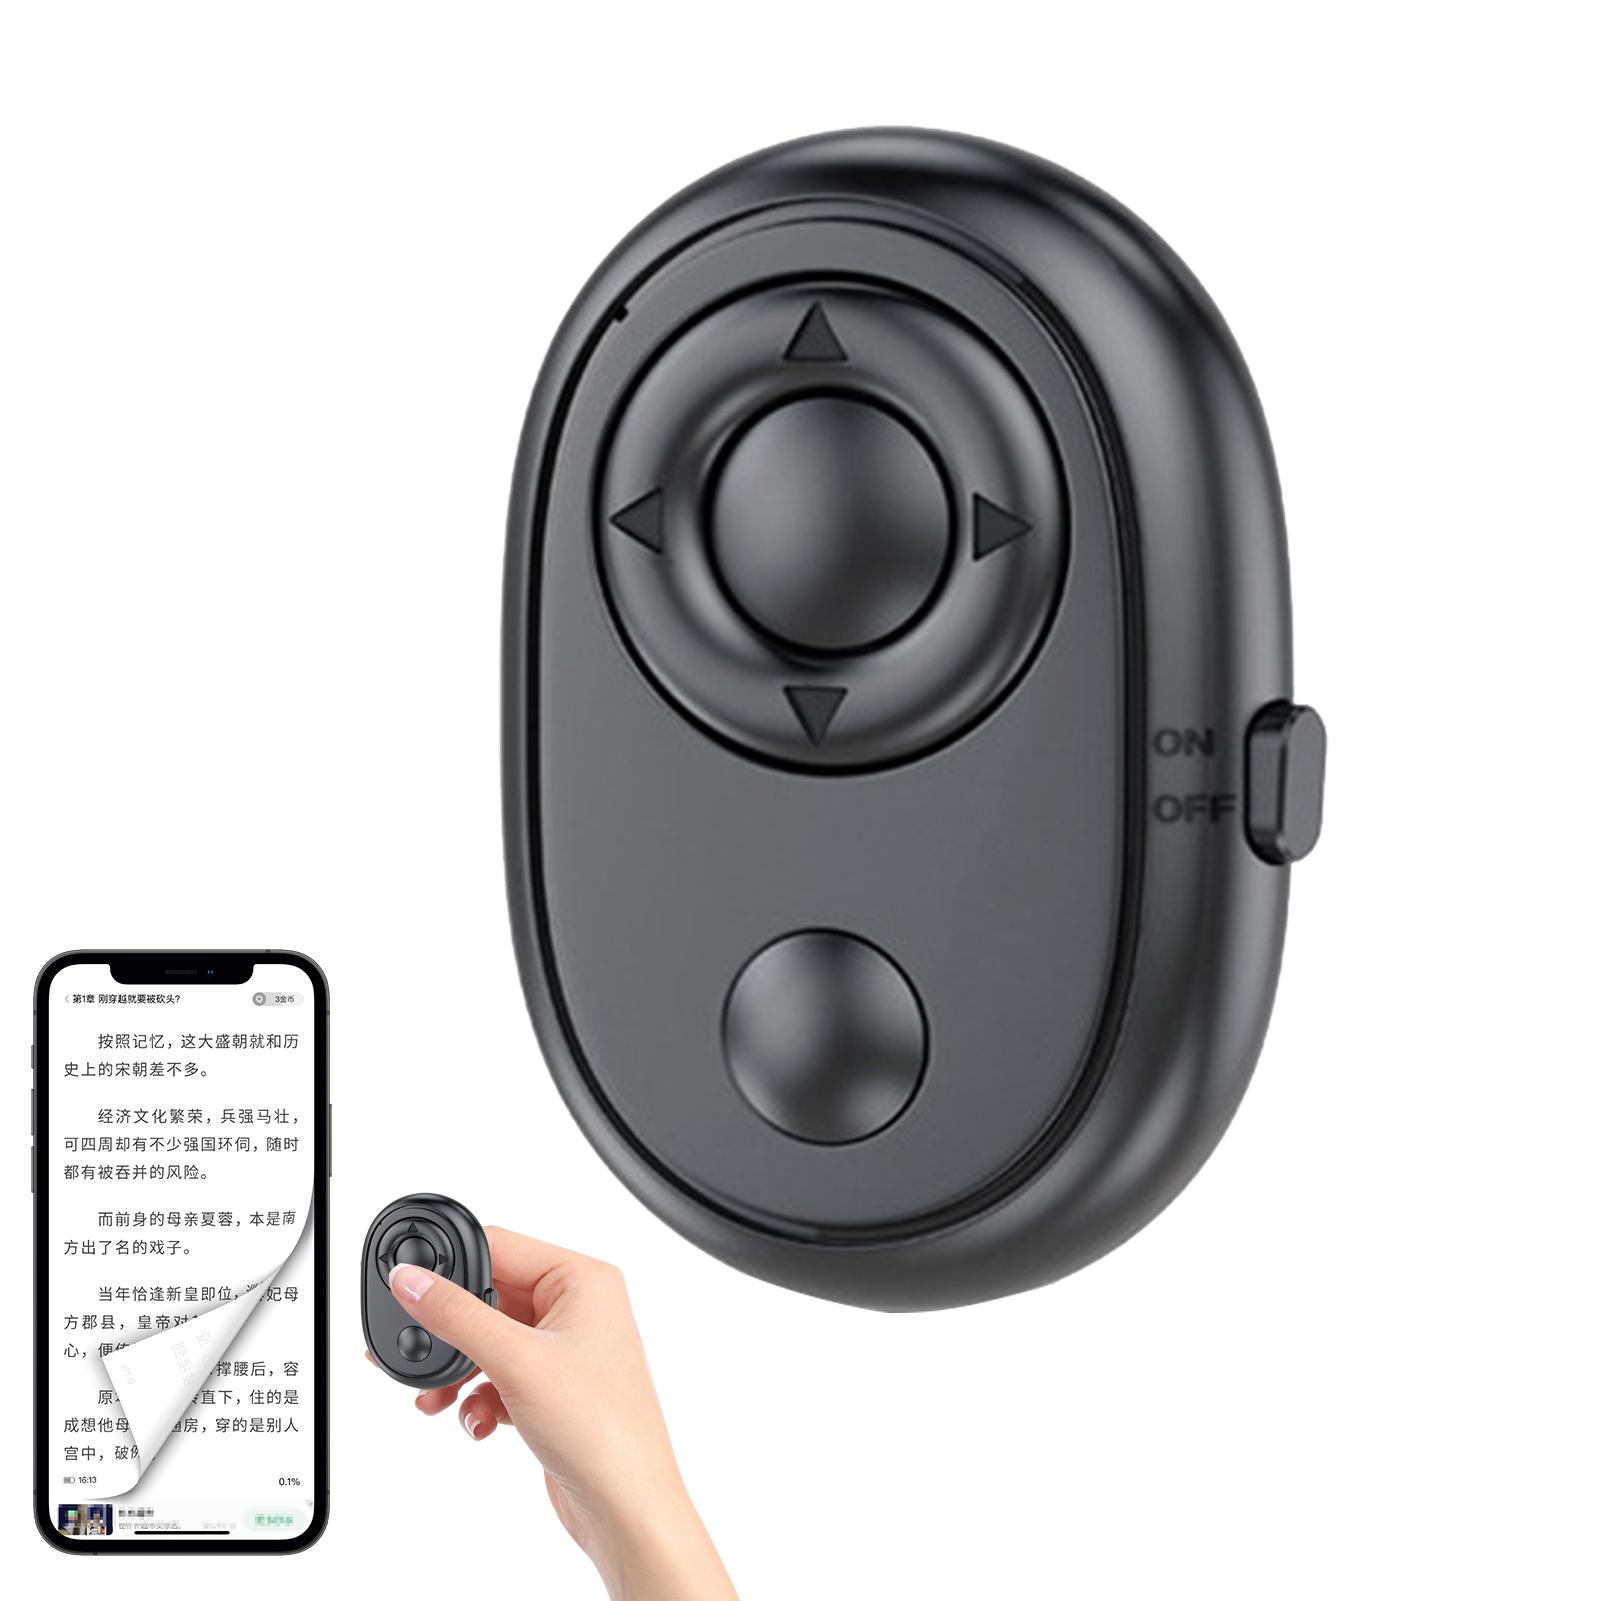 ワイヤレスカメラシャッター Bluetooth 対応 リモコン ビデオページターナー タブレット スマートフォン用 アプリコントローラー